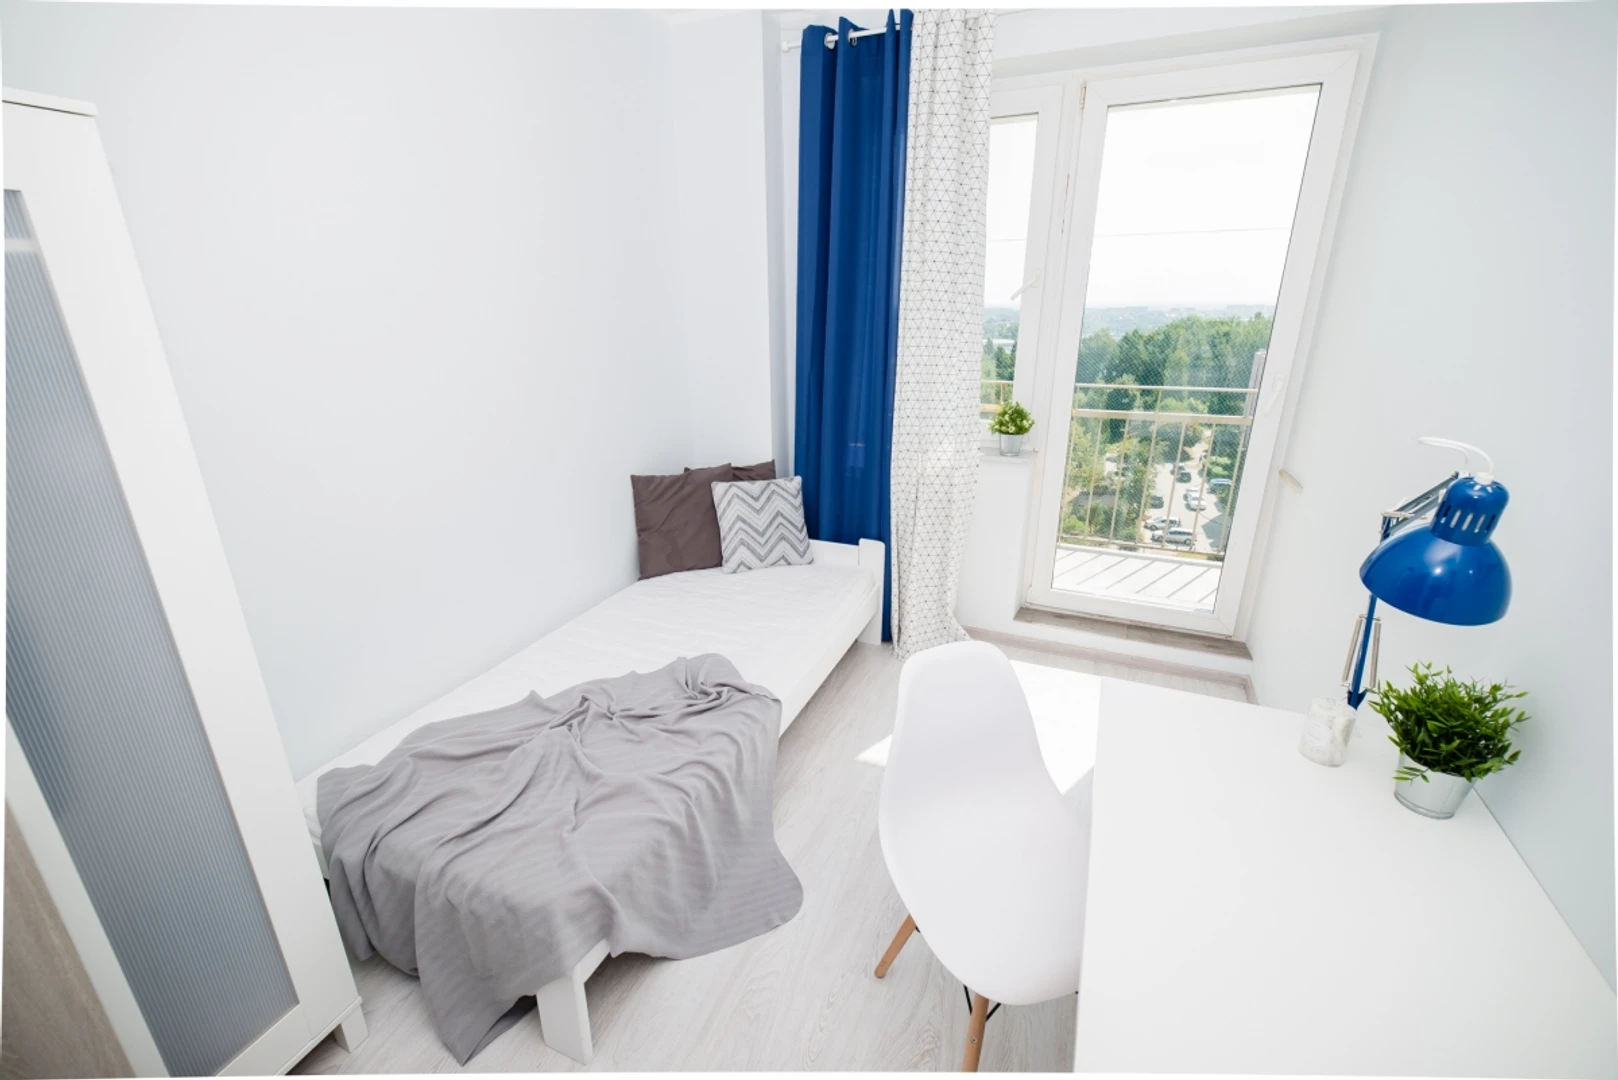 Chambre à louer dans un appartement en colocation à gdansk